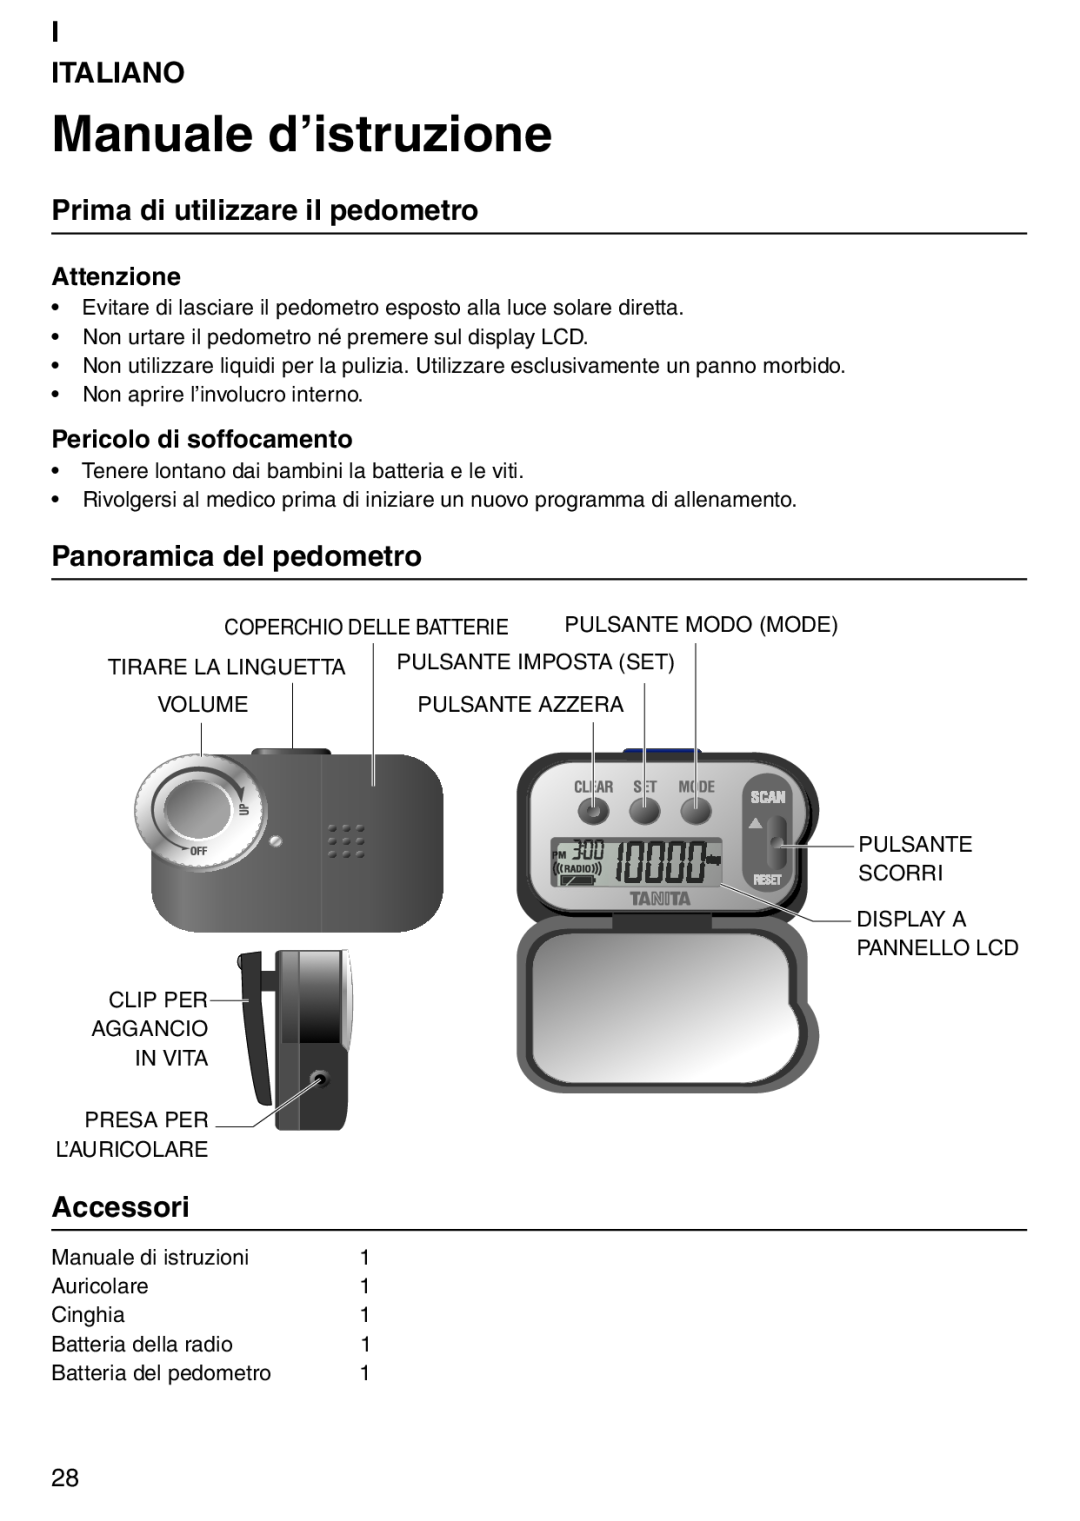 Tanita PD640 Manuale d’istruzione, I Italiano, Prima di utilizzare il pedometro, Panoramica del pedometro, Accessori 